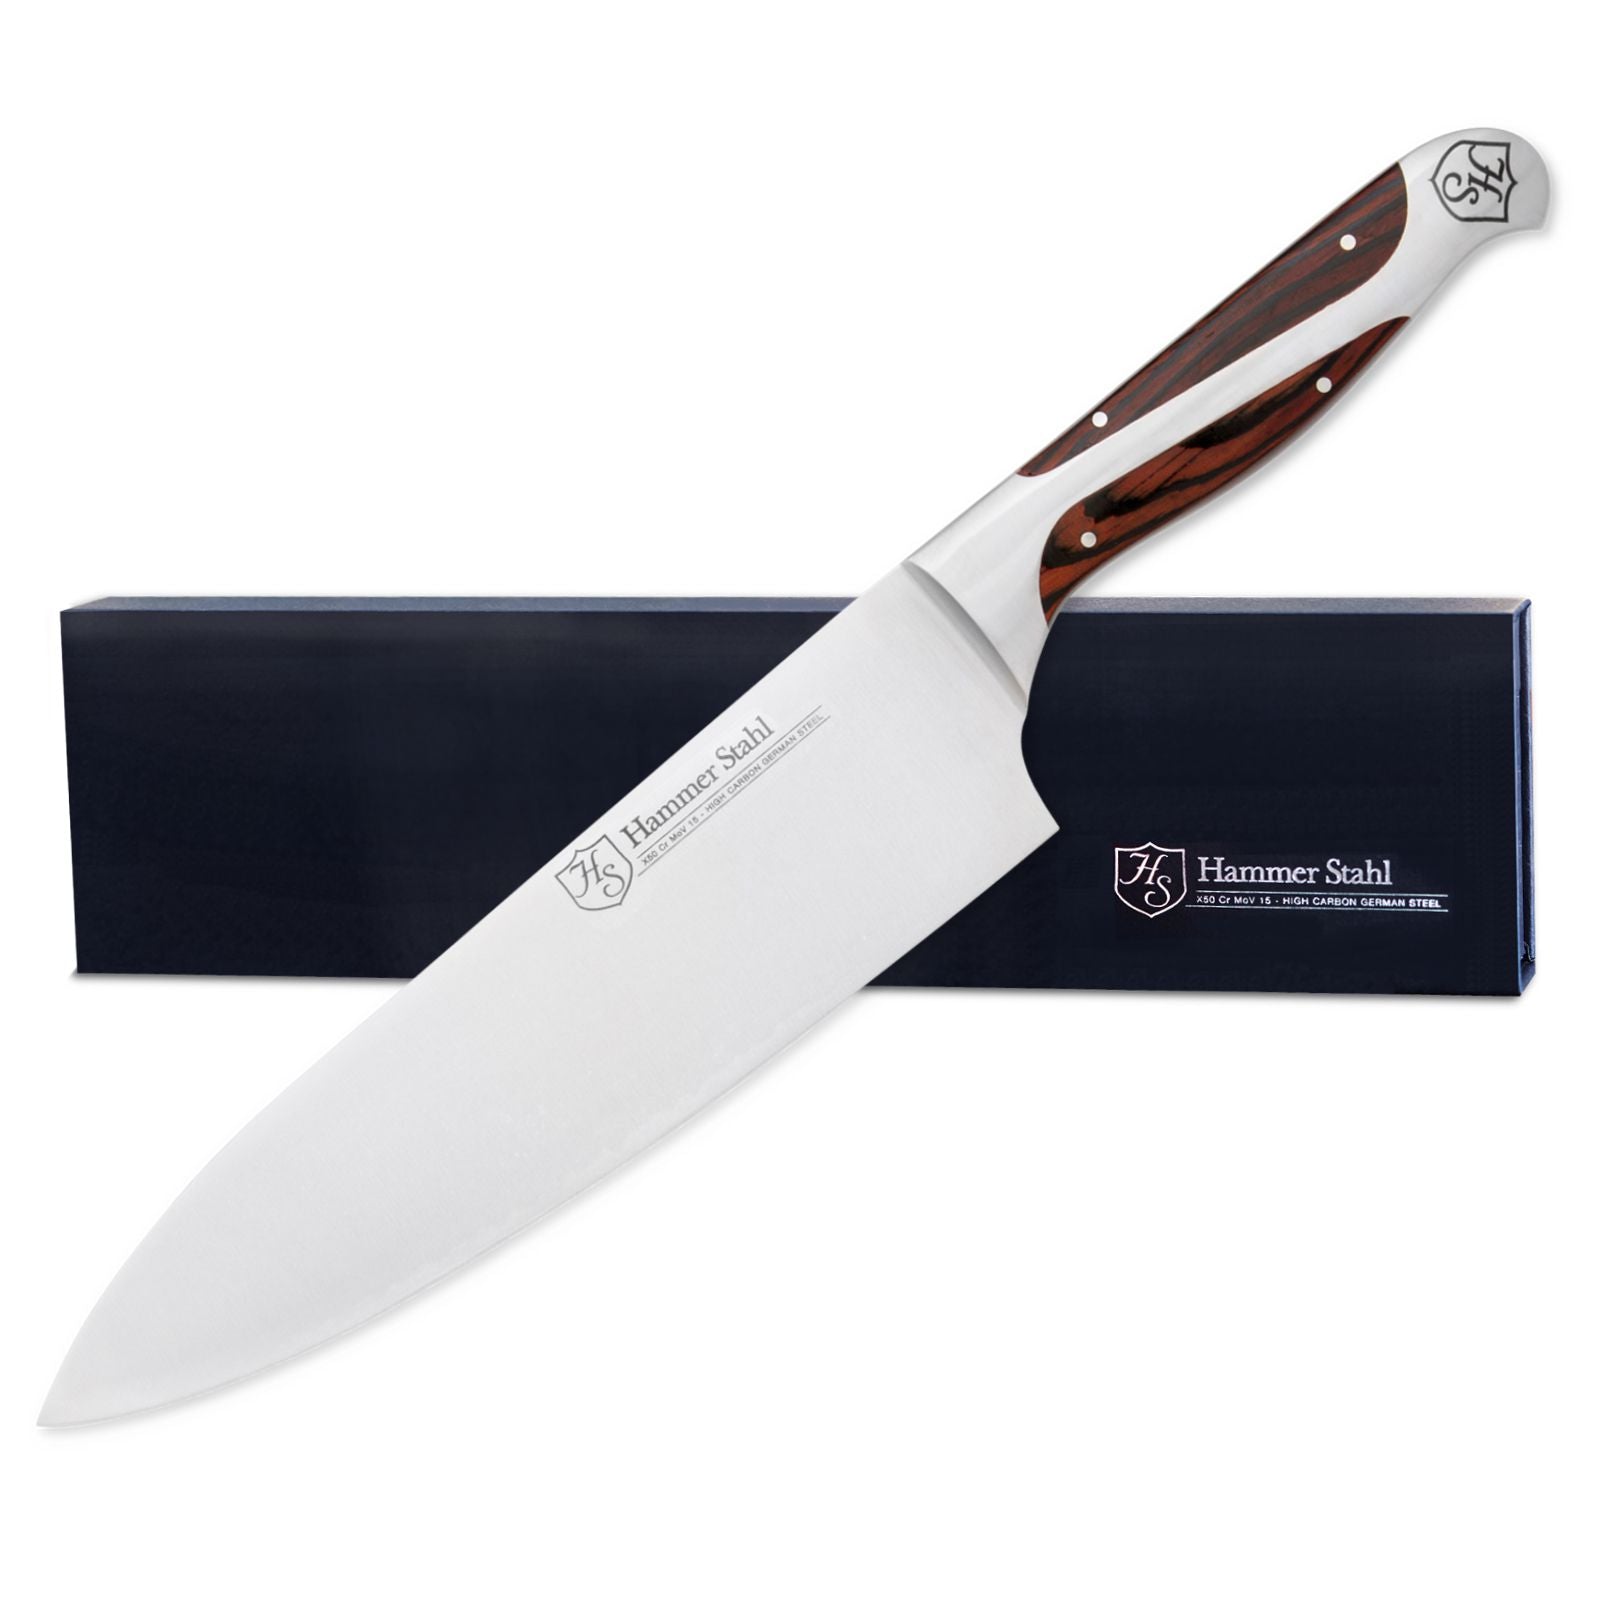 8-inch Chef Knife - 1.4116 German Stainless Steel – GrandTies